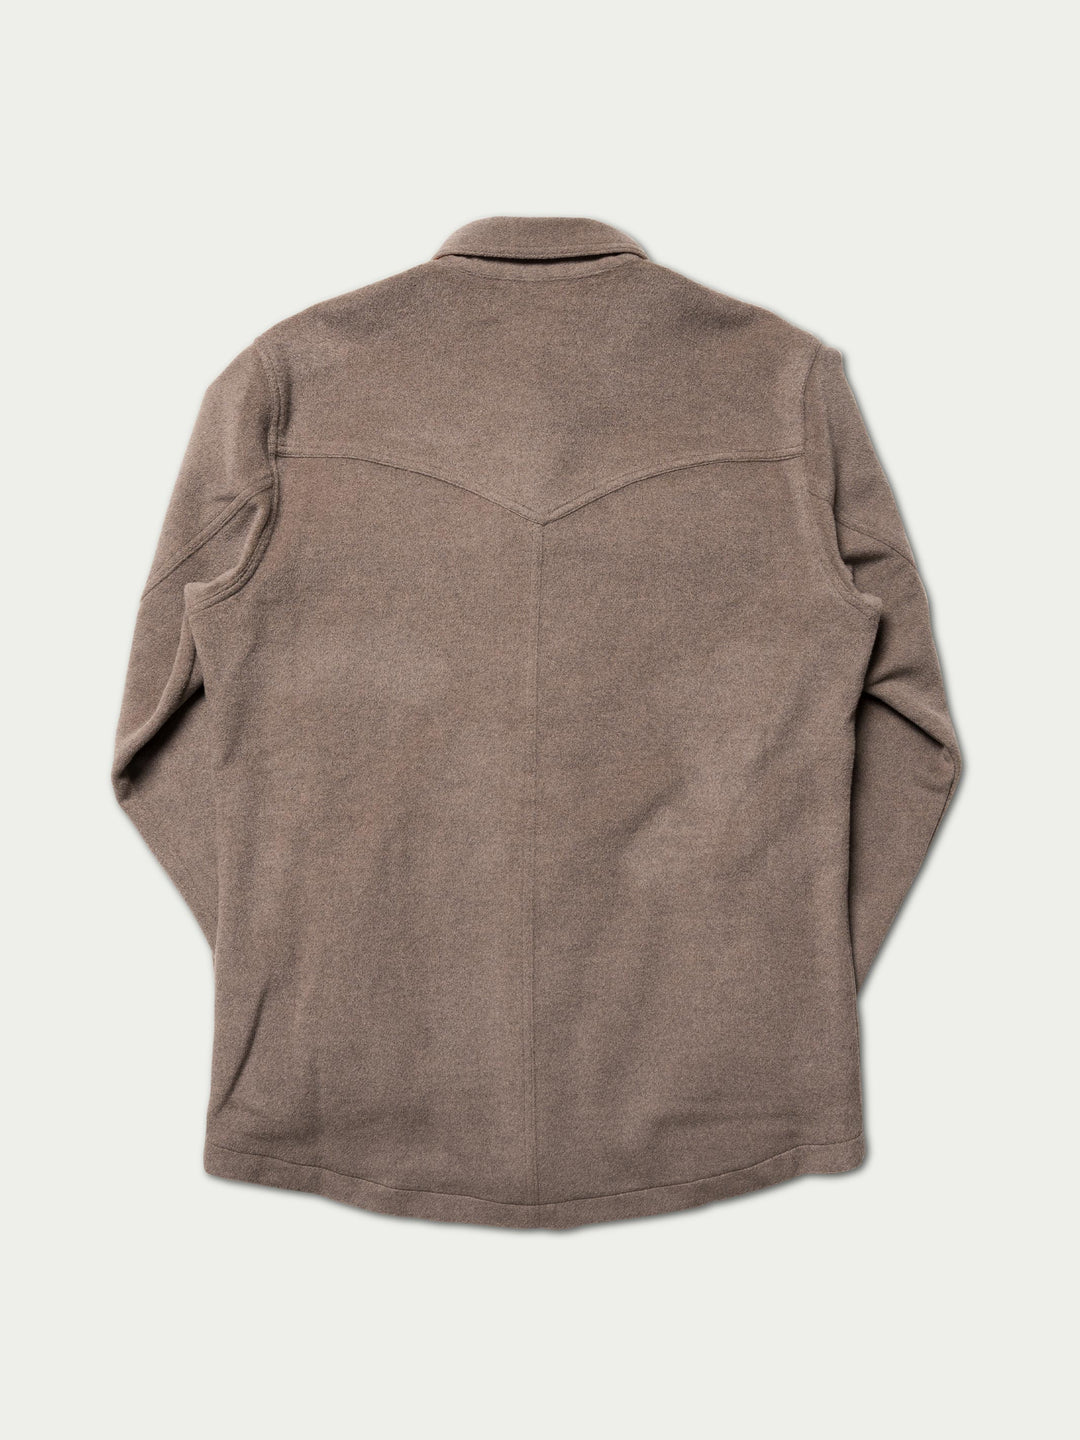 Wool Overshirt - Schaefer Outfitter